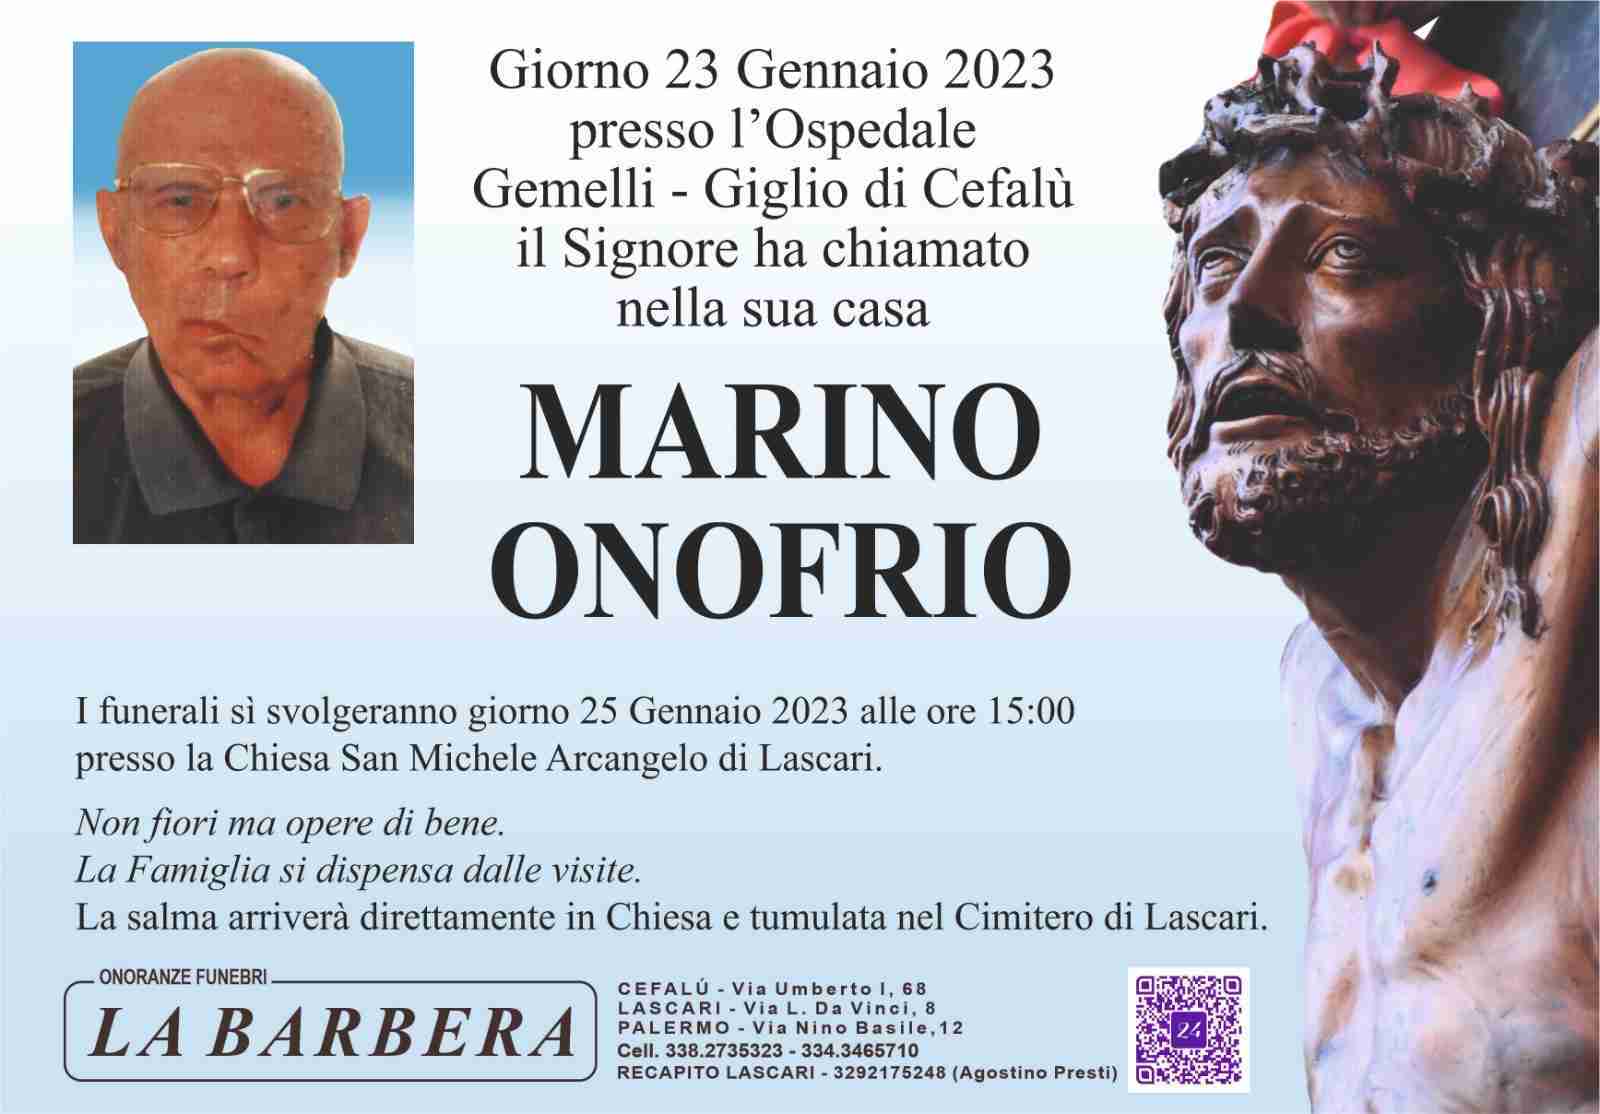 Onofrio Marino